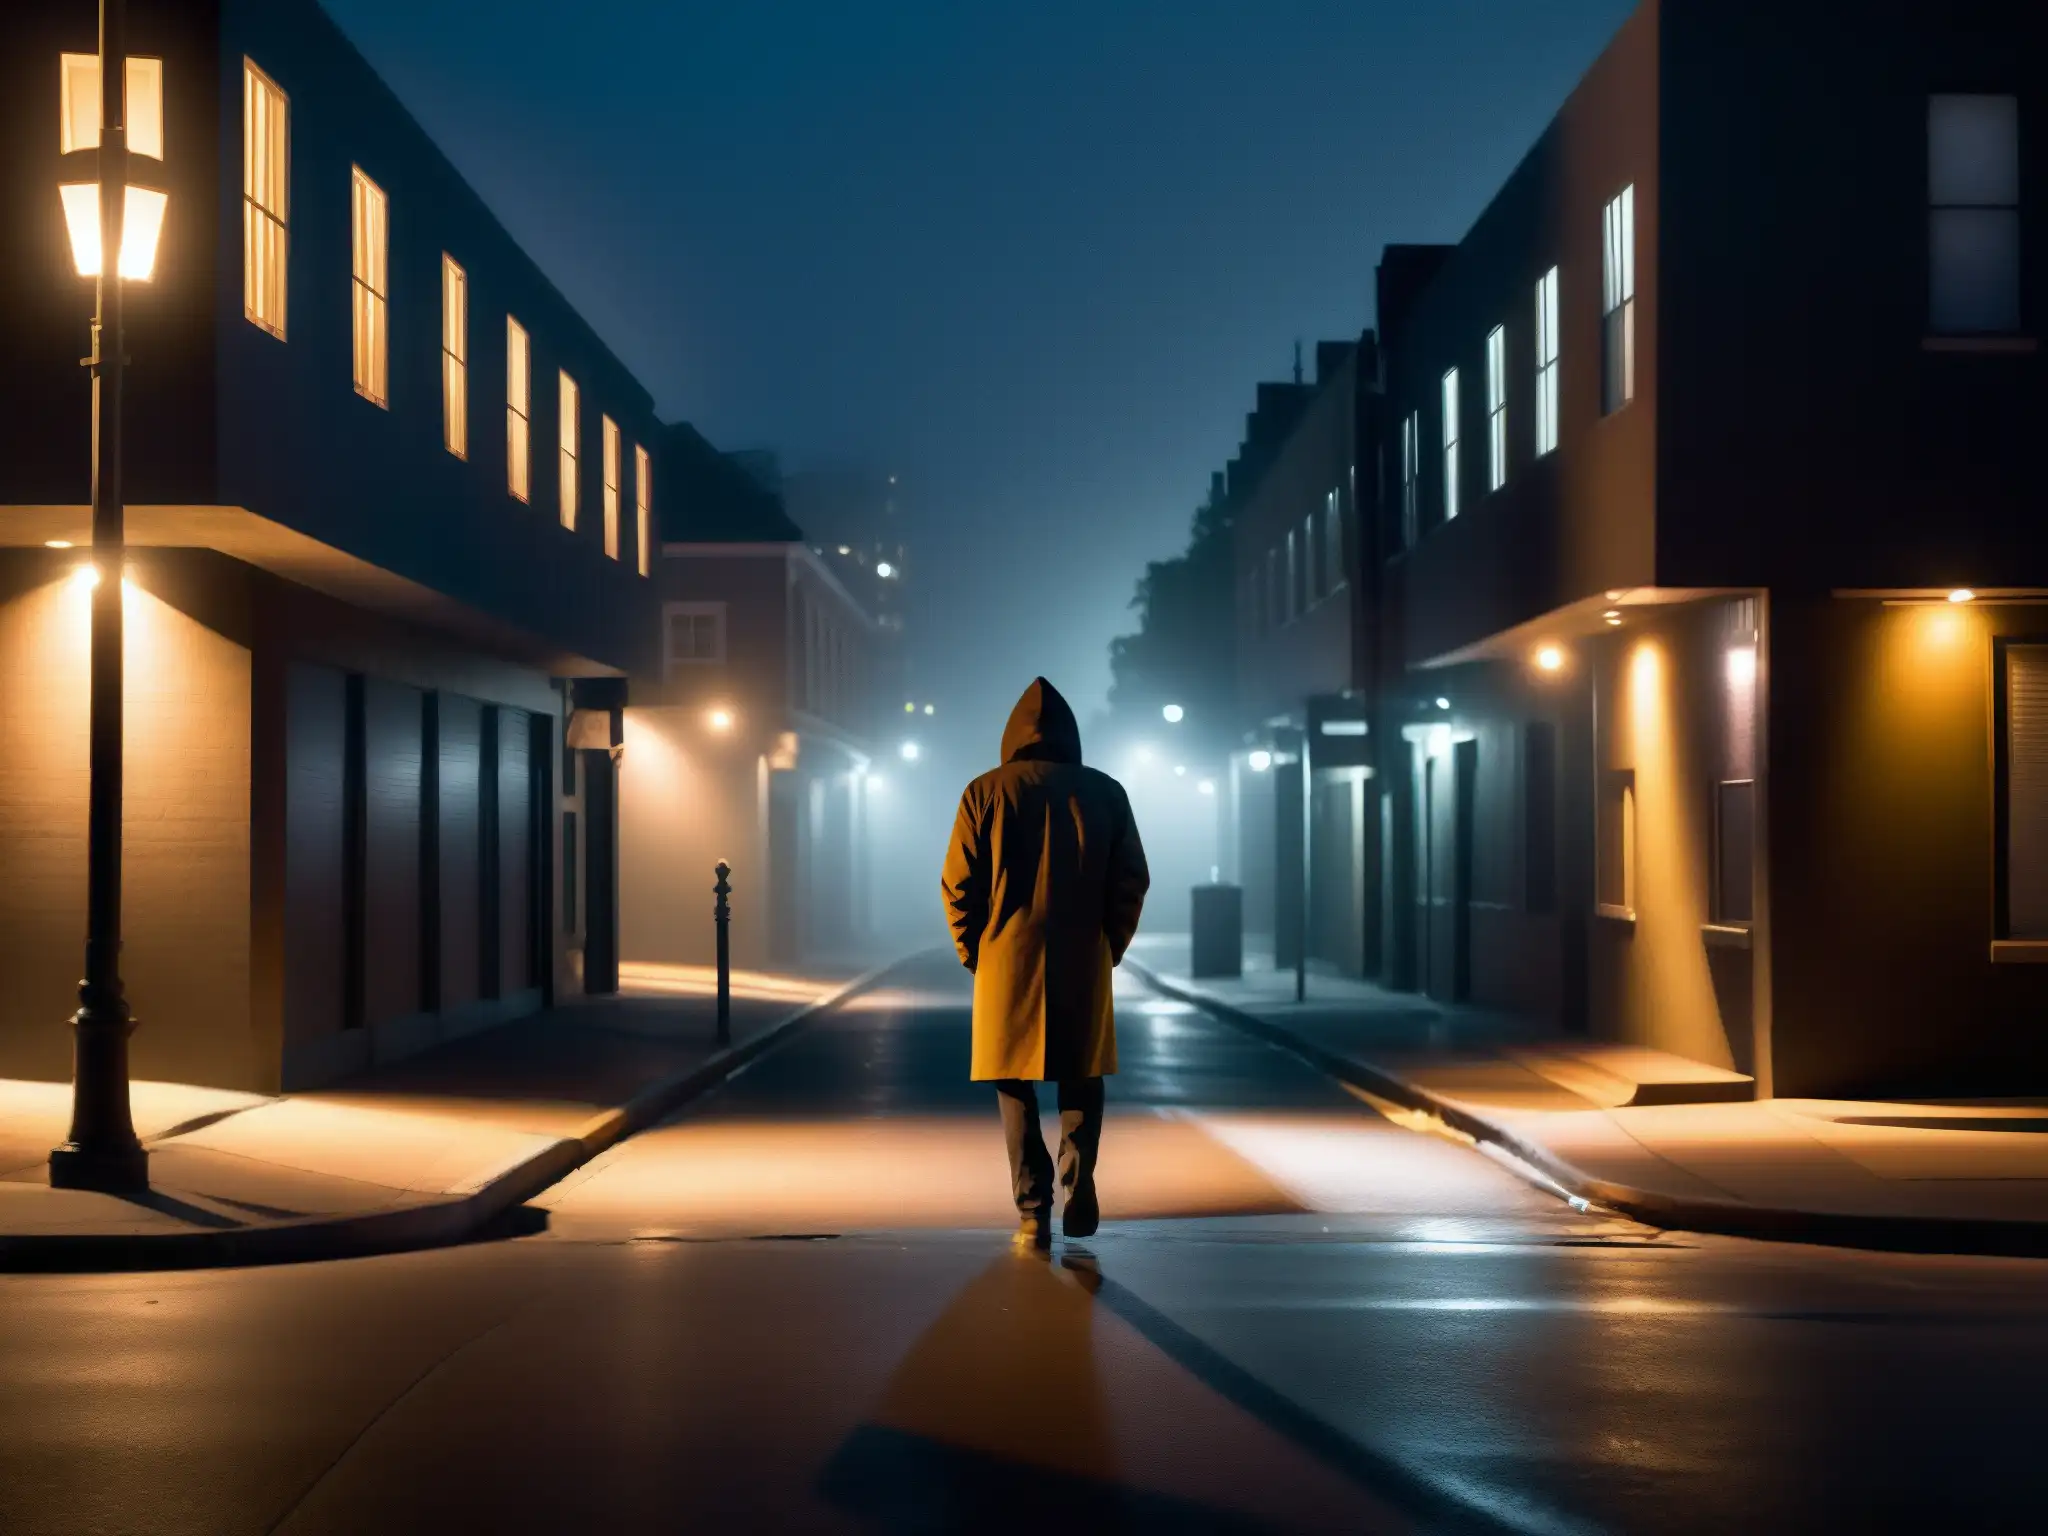 Persona solitaria camina en la oscuridad de la calle, envuelta en misterio